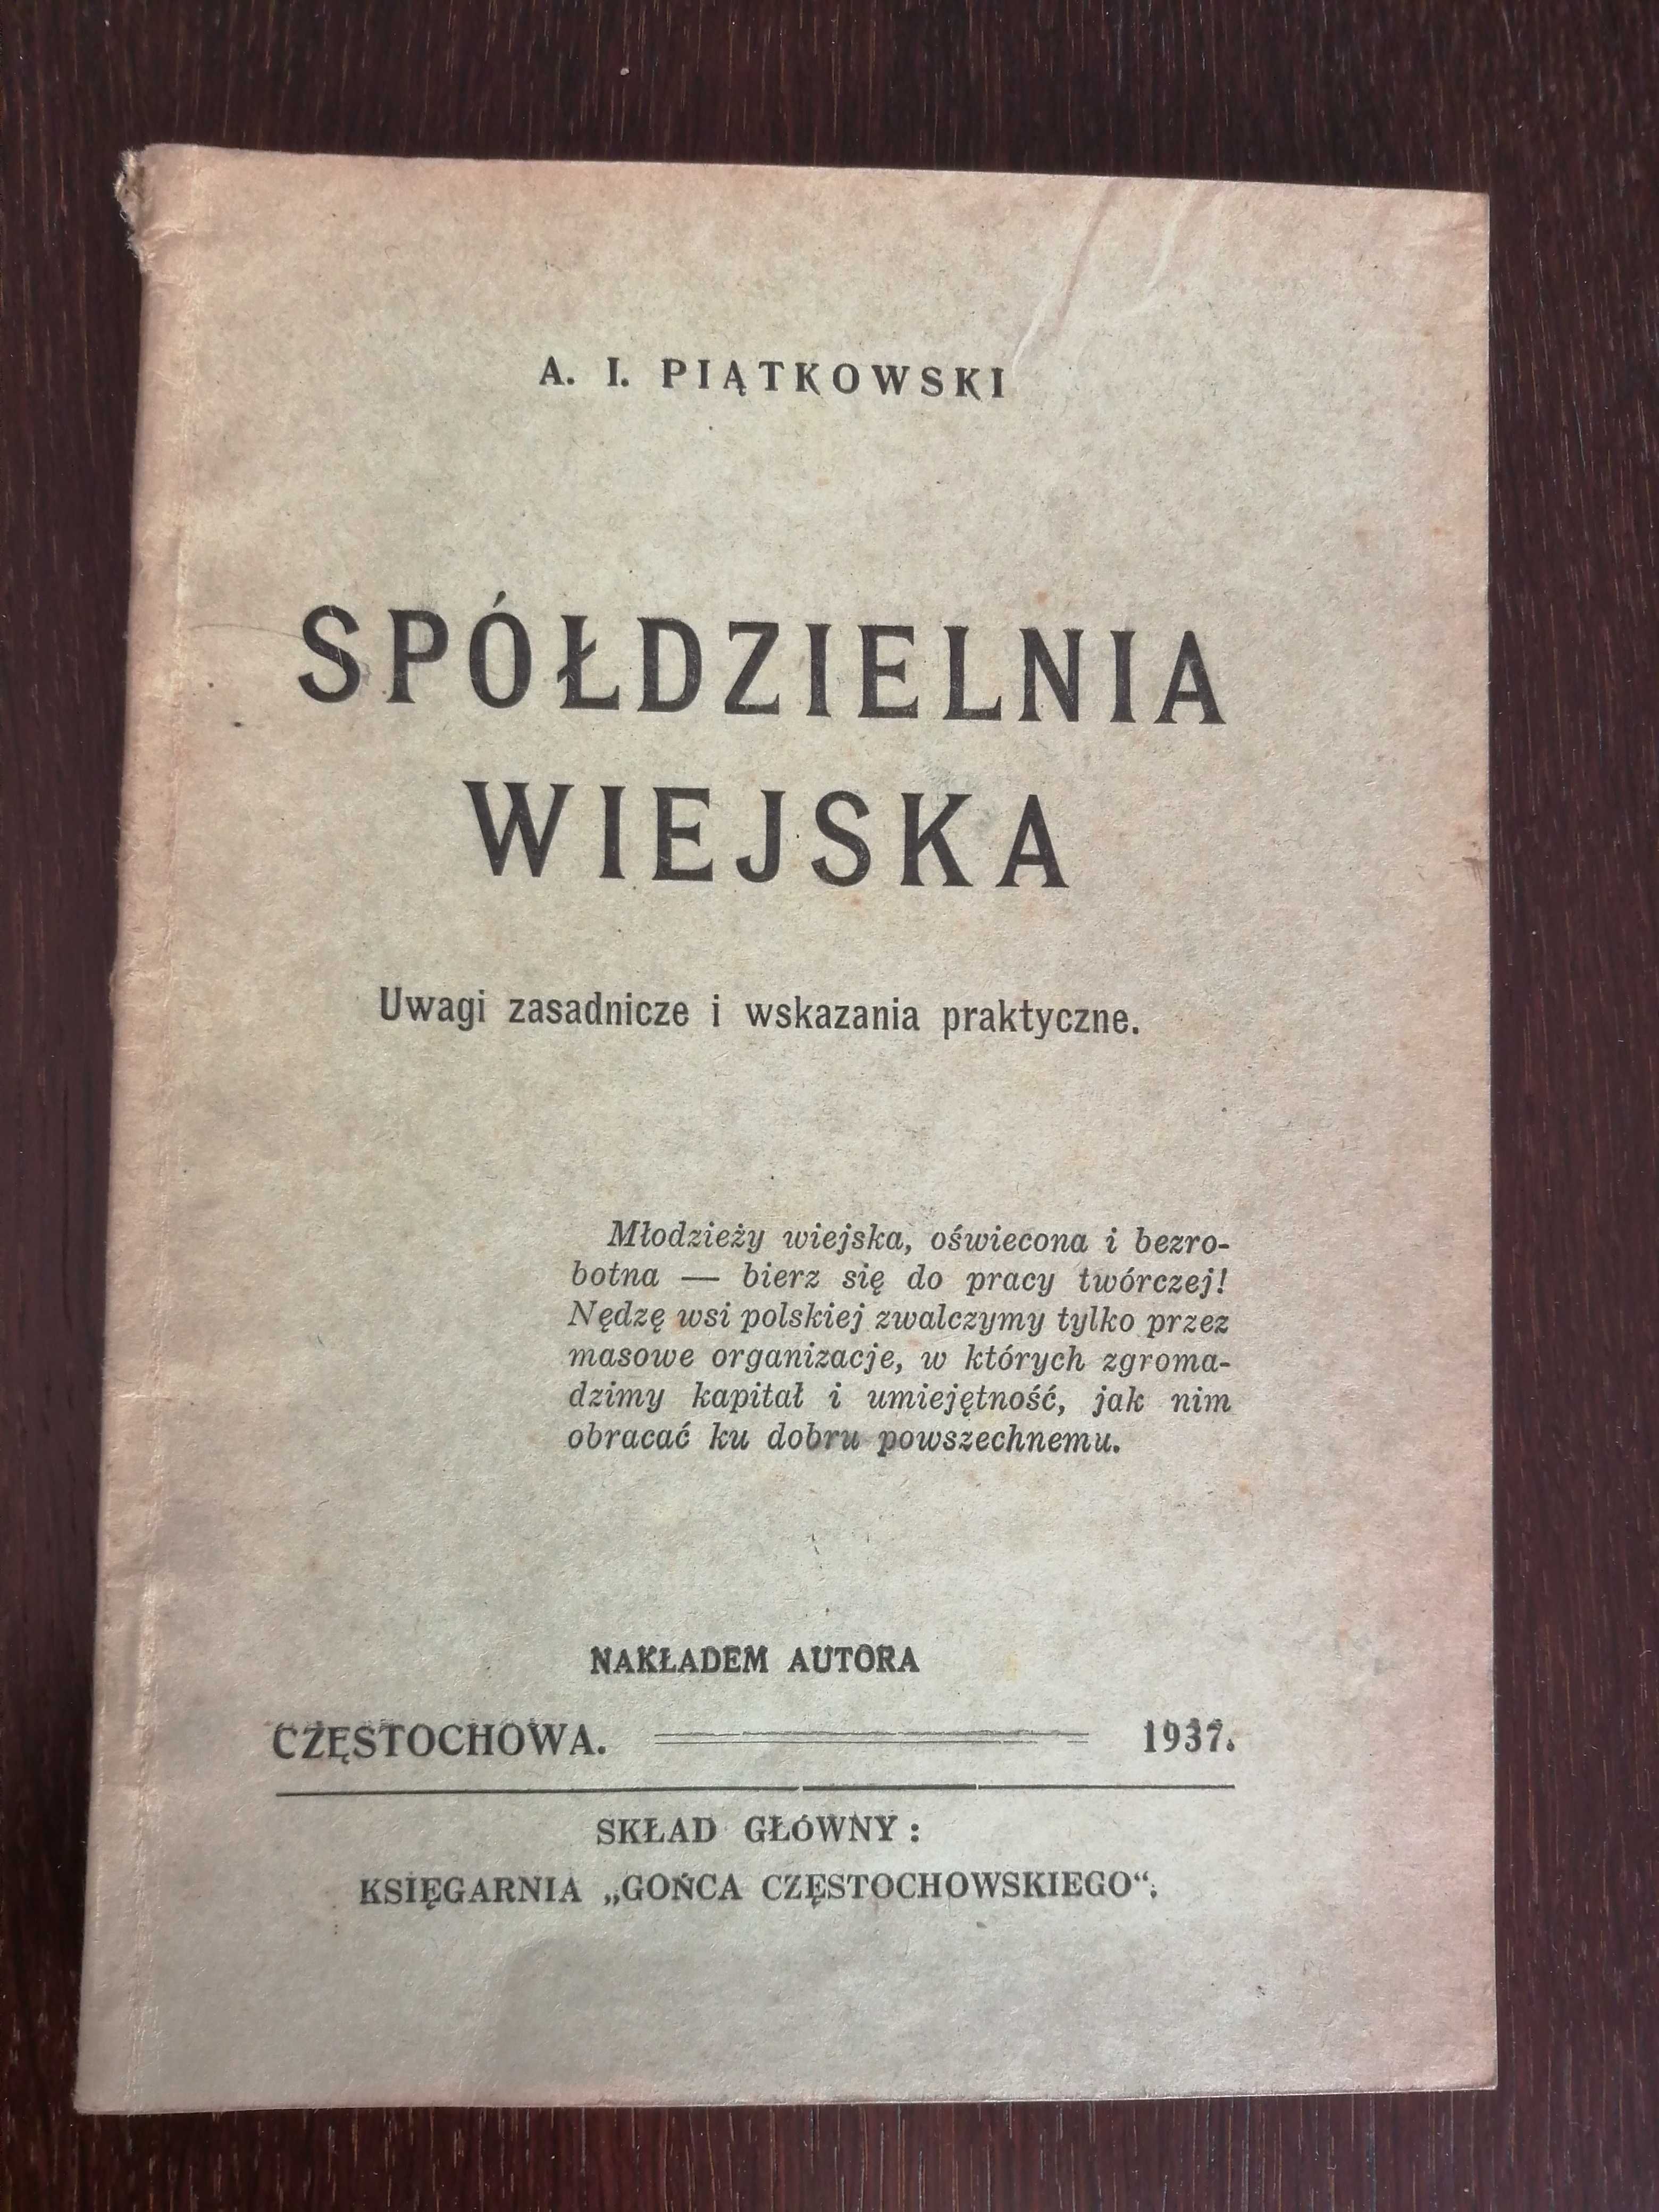 A.I. Piątkowski, Spółdzielnia wiejska, 1937